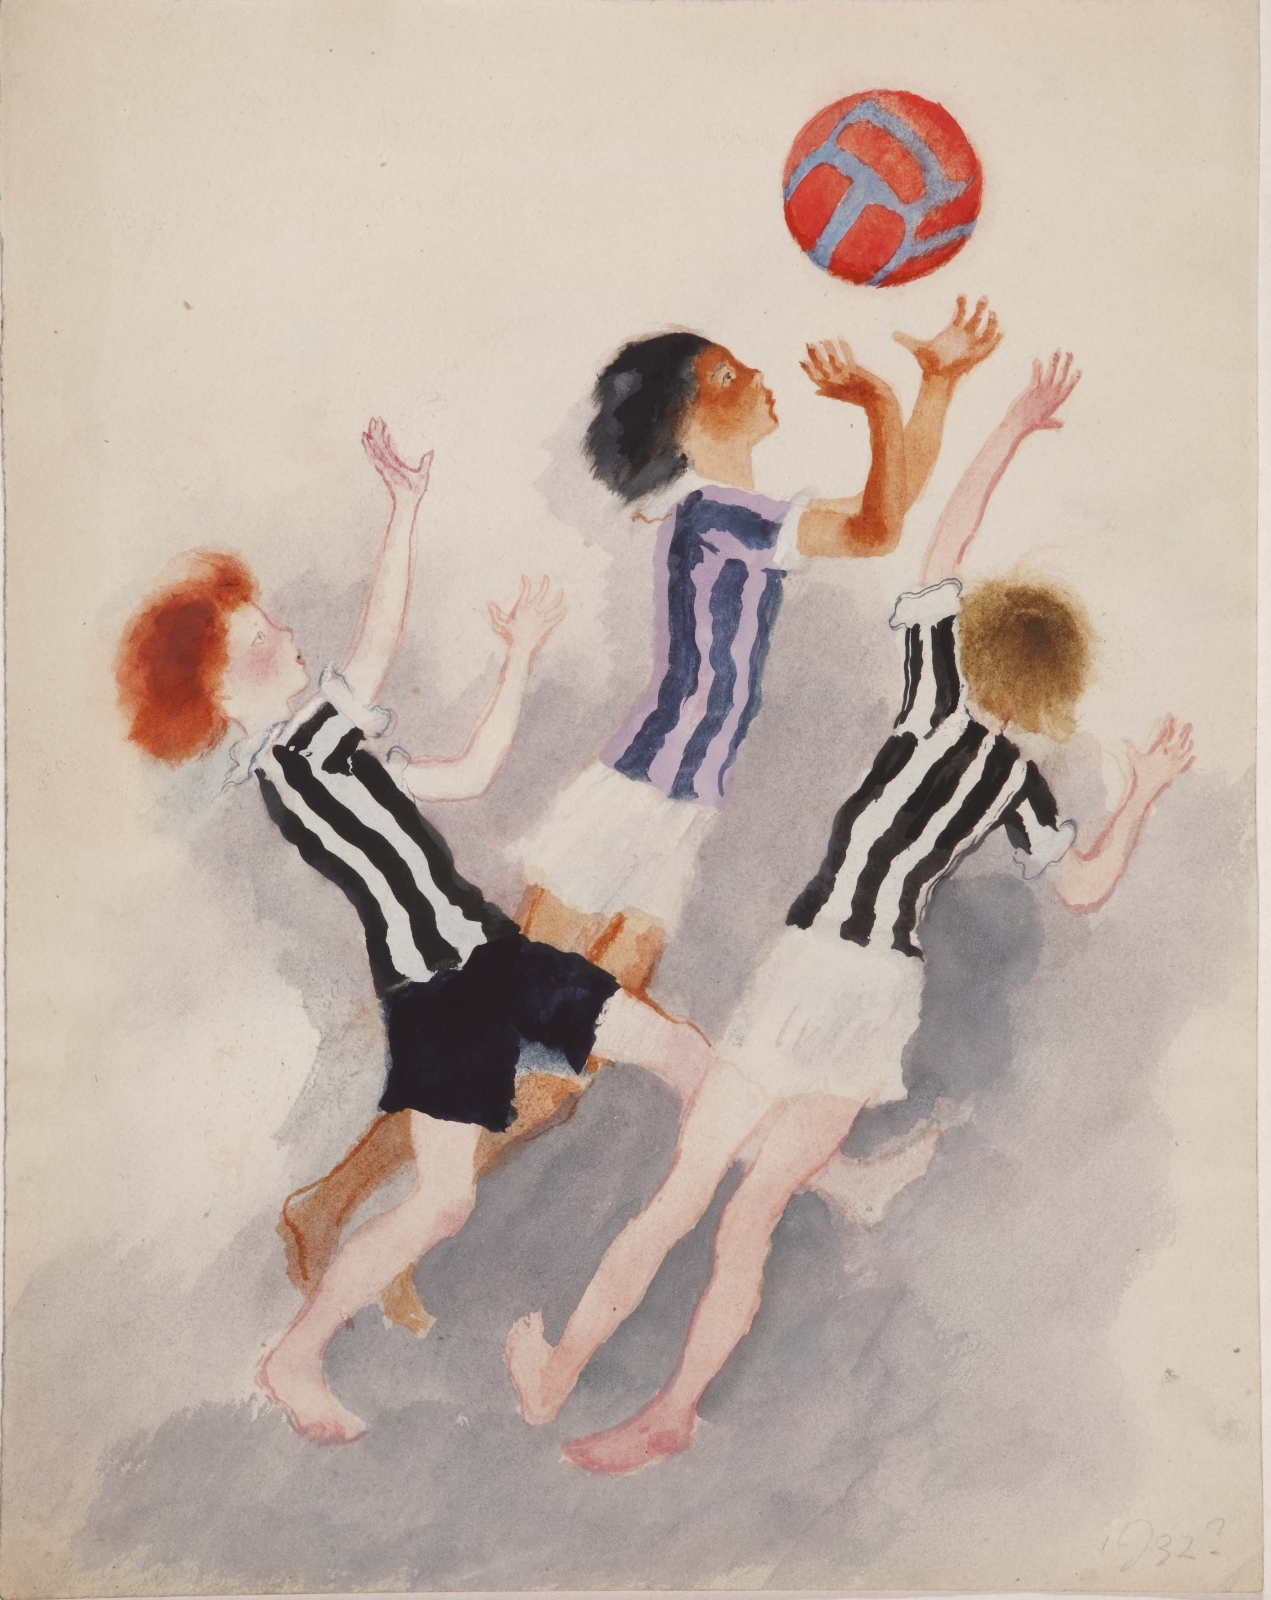 Иллюстрация к стихотворению С.Я. Маршака «Мяч». 1932